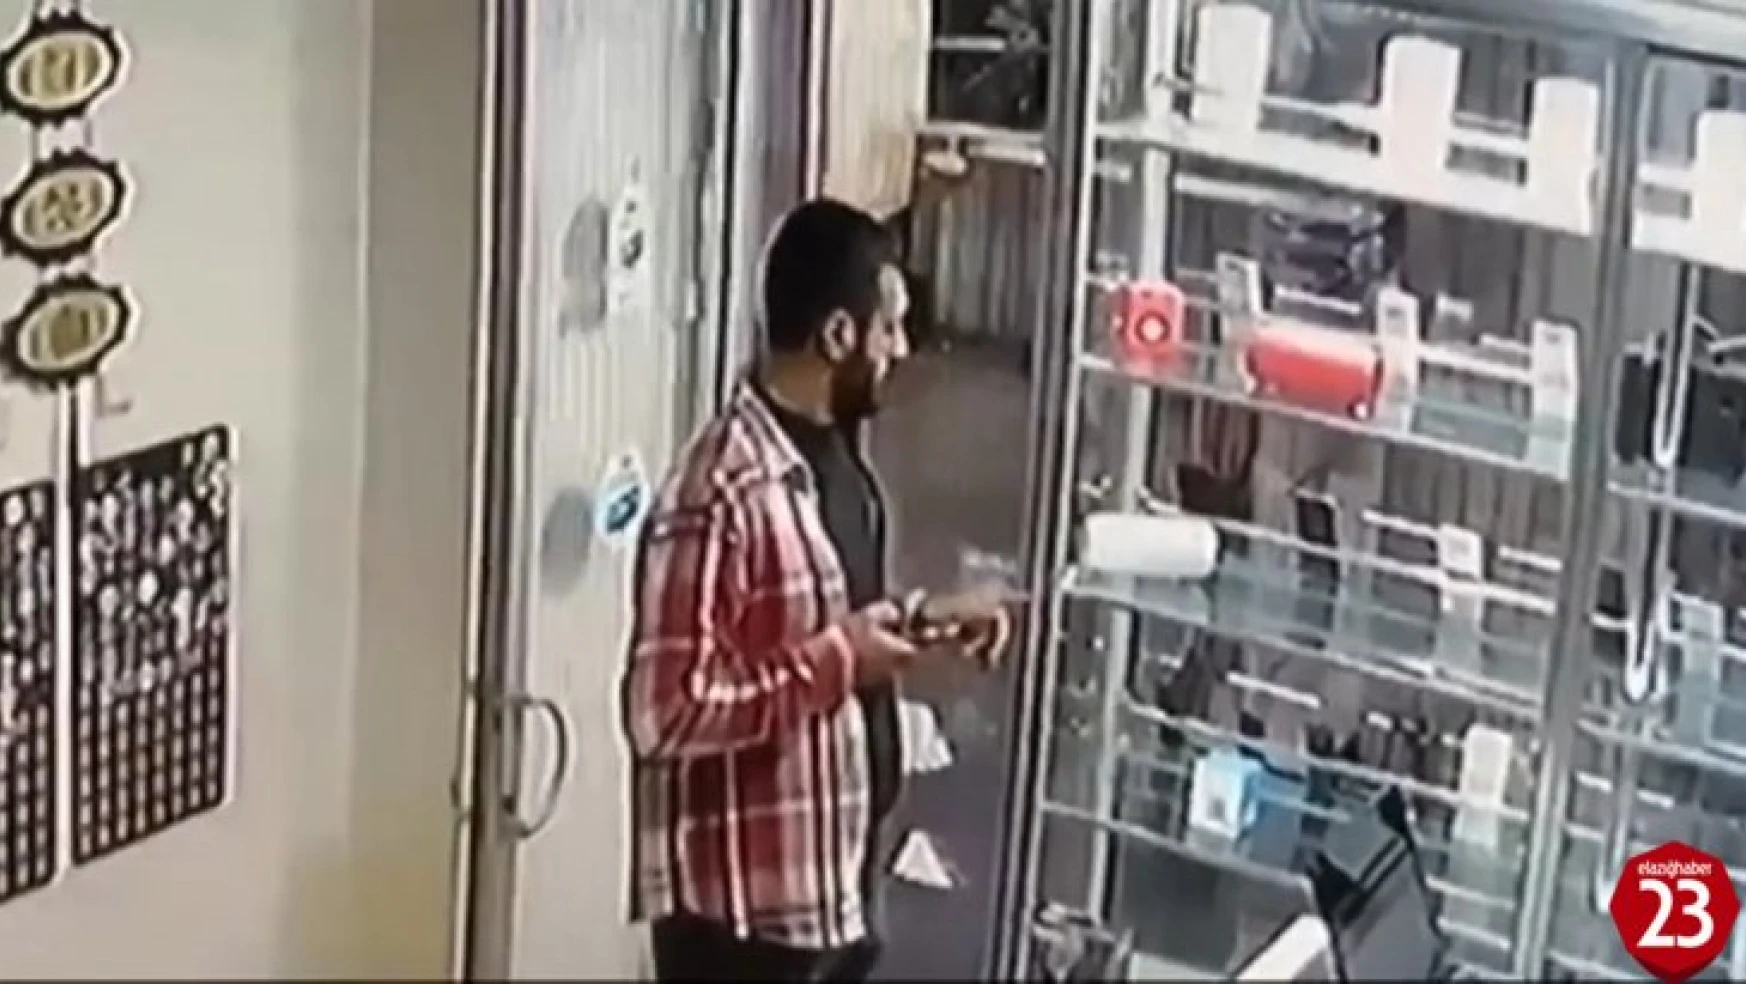 Dükkanda Kimsenin Olmadığı Anlayan Hırsız, Vitrindeki Telefonu Çaldı